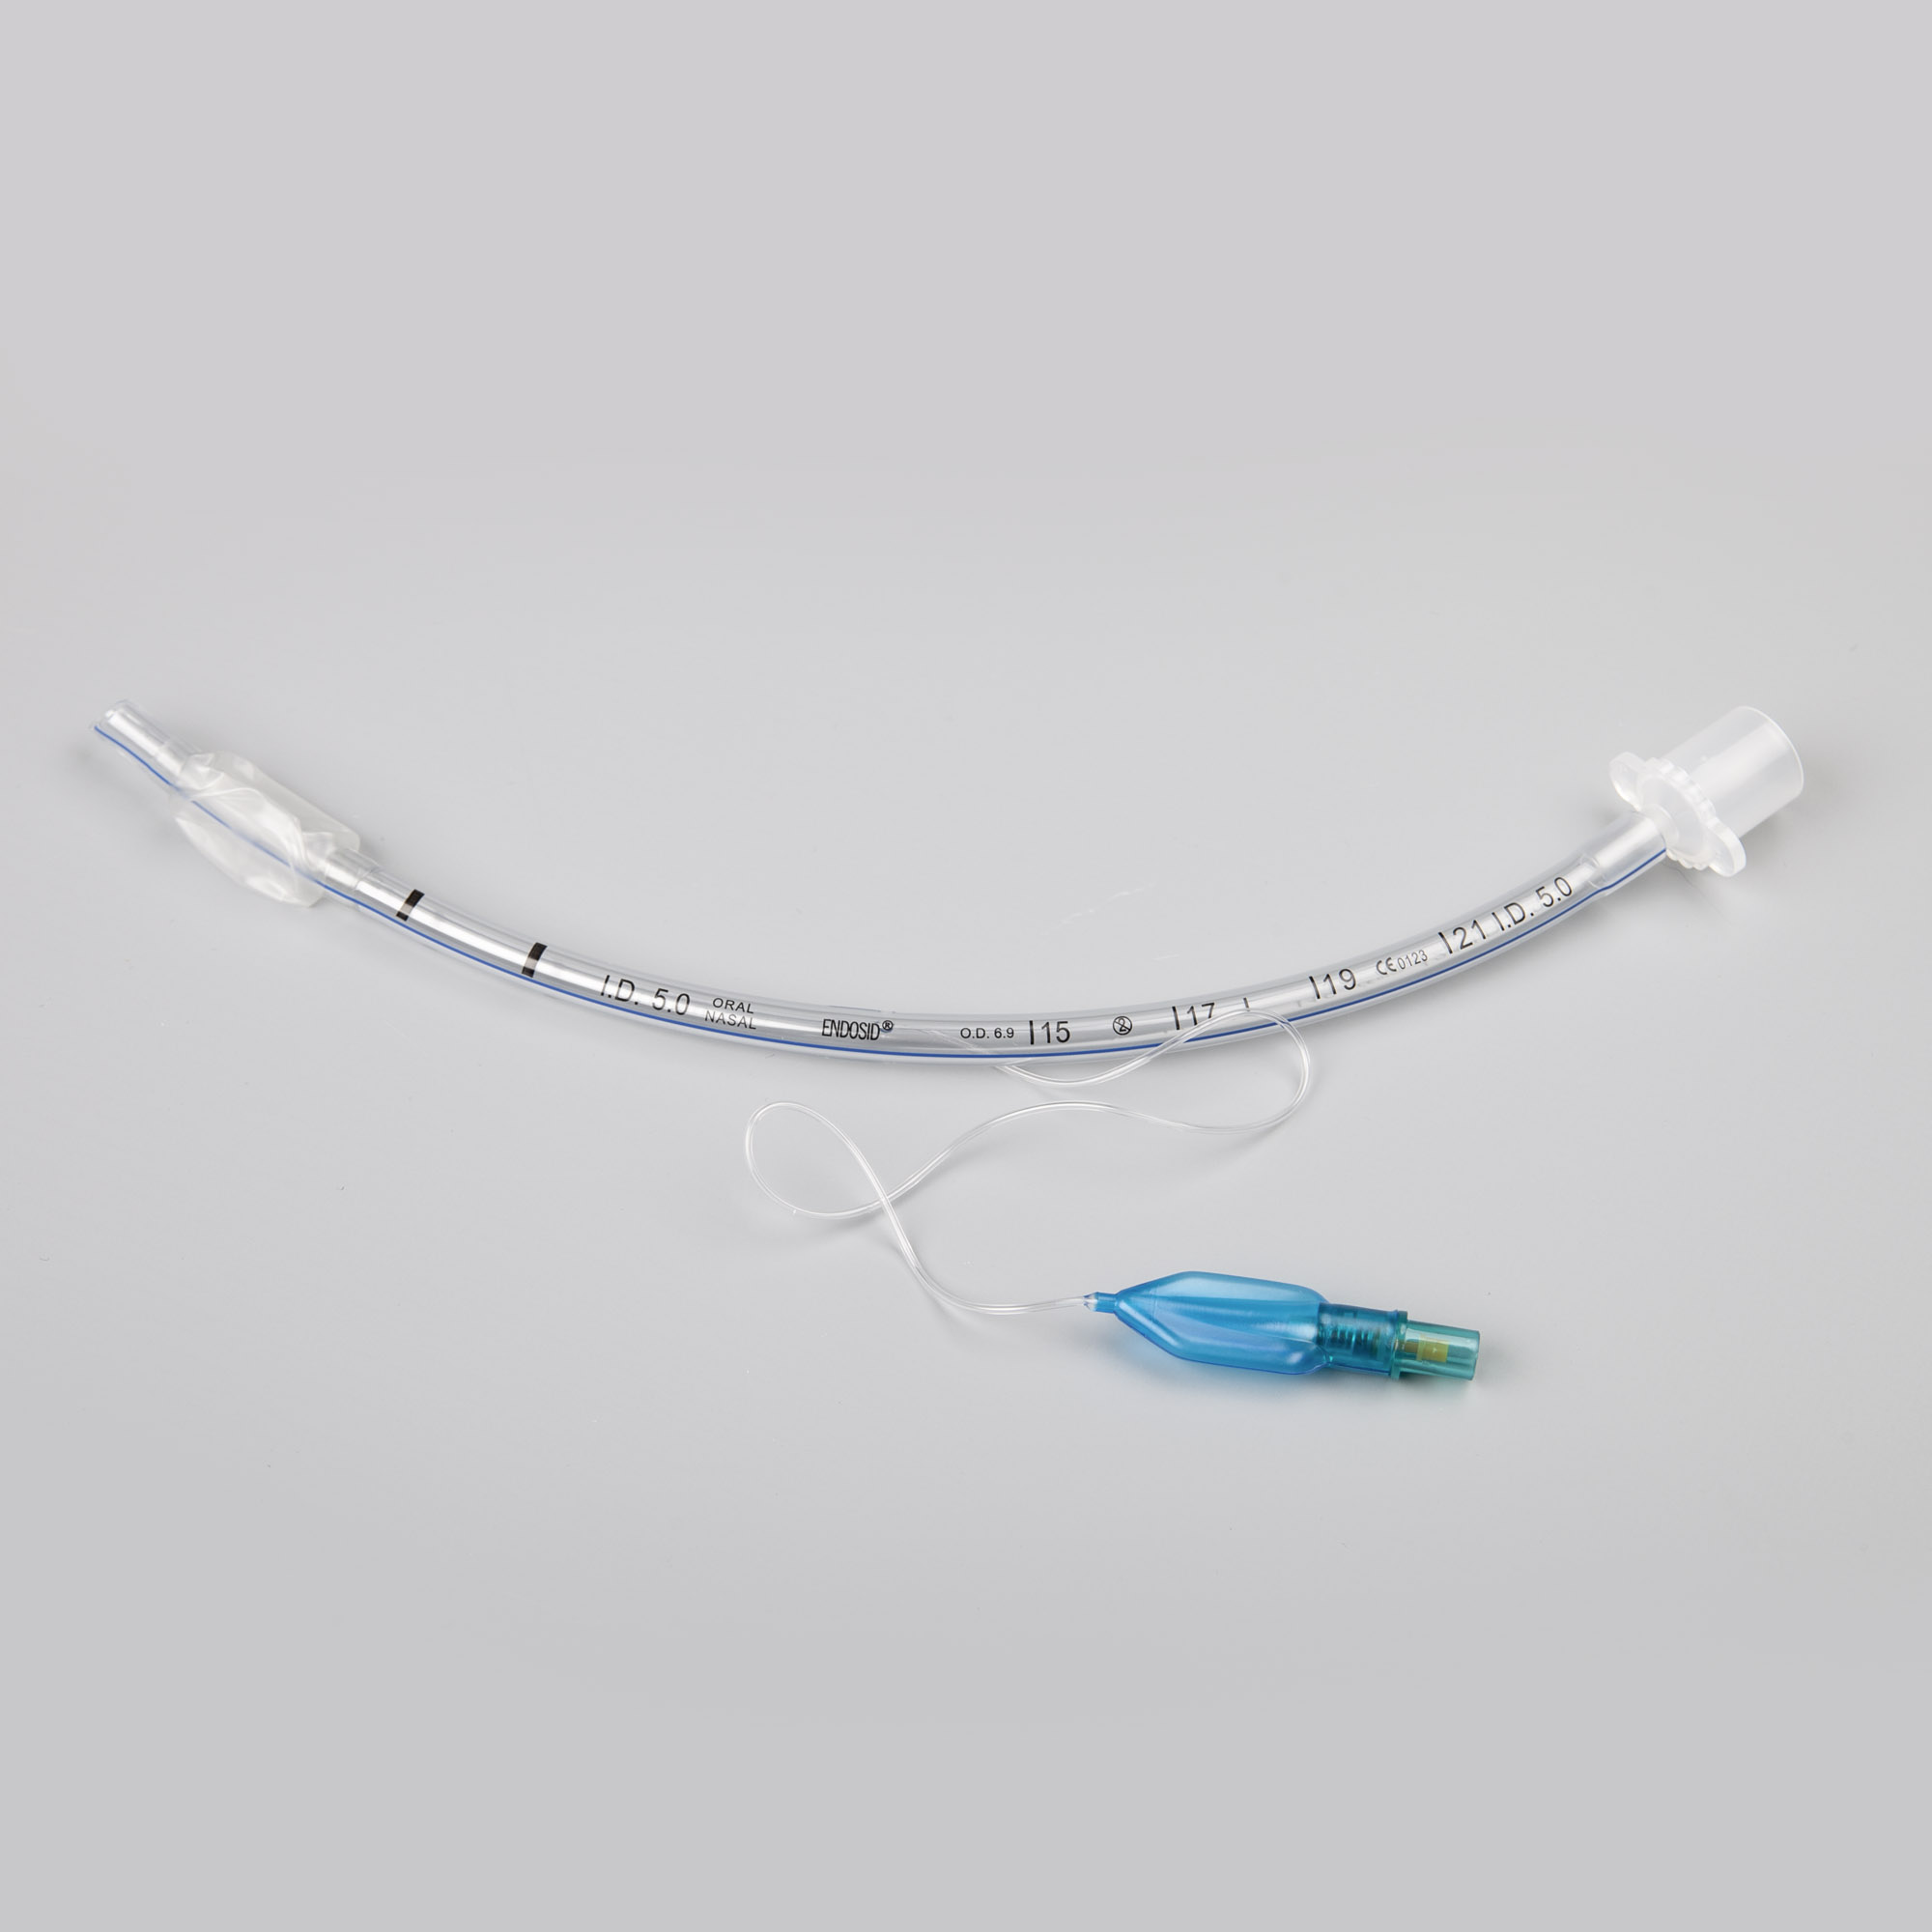 Endosid®-Tubus nasal/oral mit Cuff, Murphy-Auge und Mandrin I.D. 8,5 mm (CH 34)